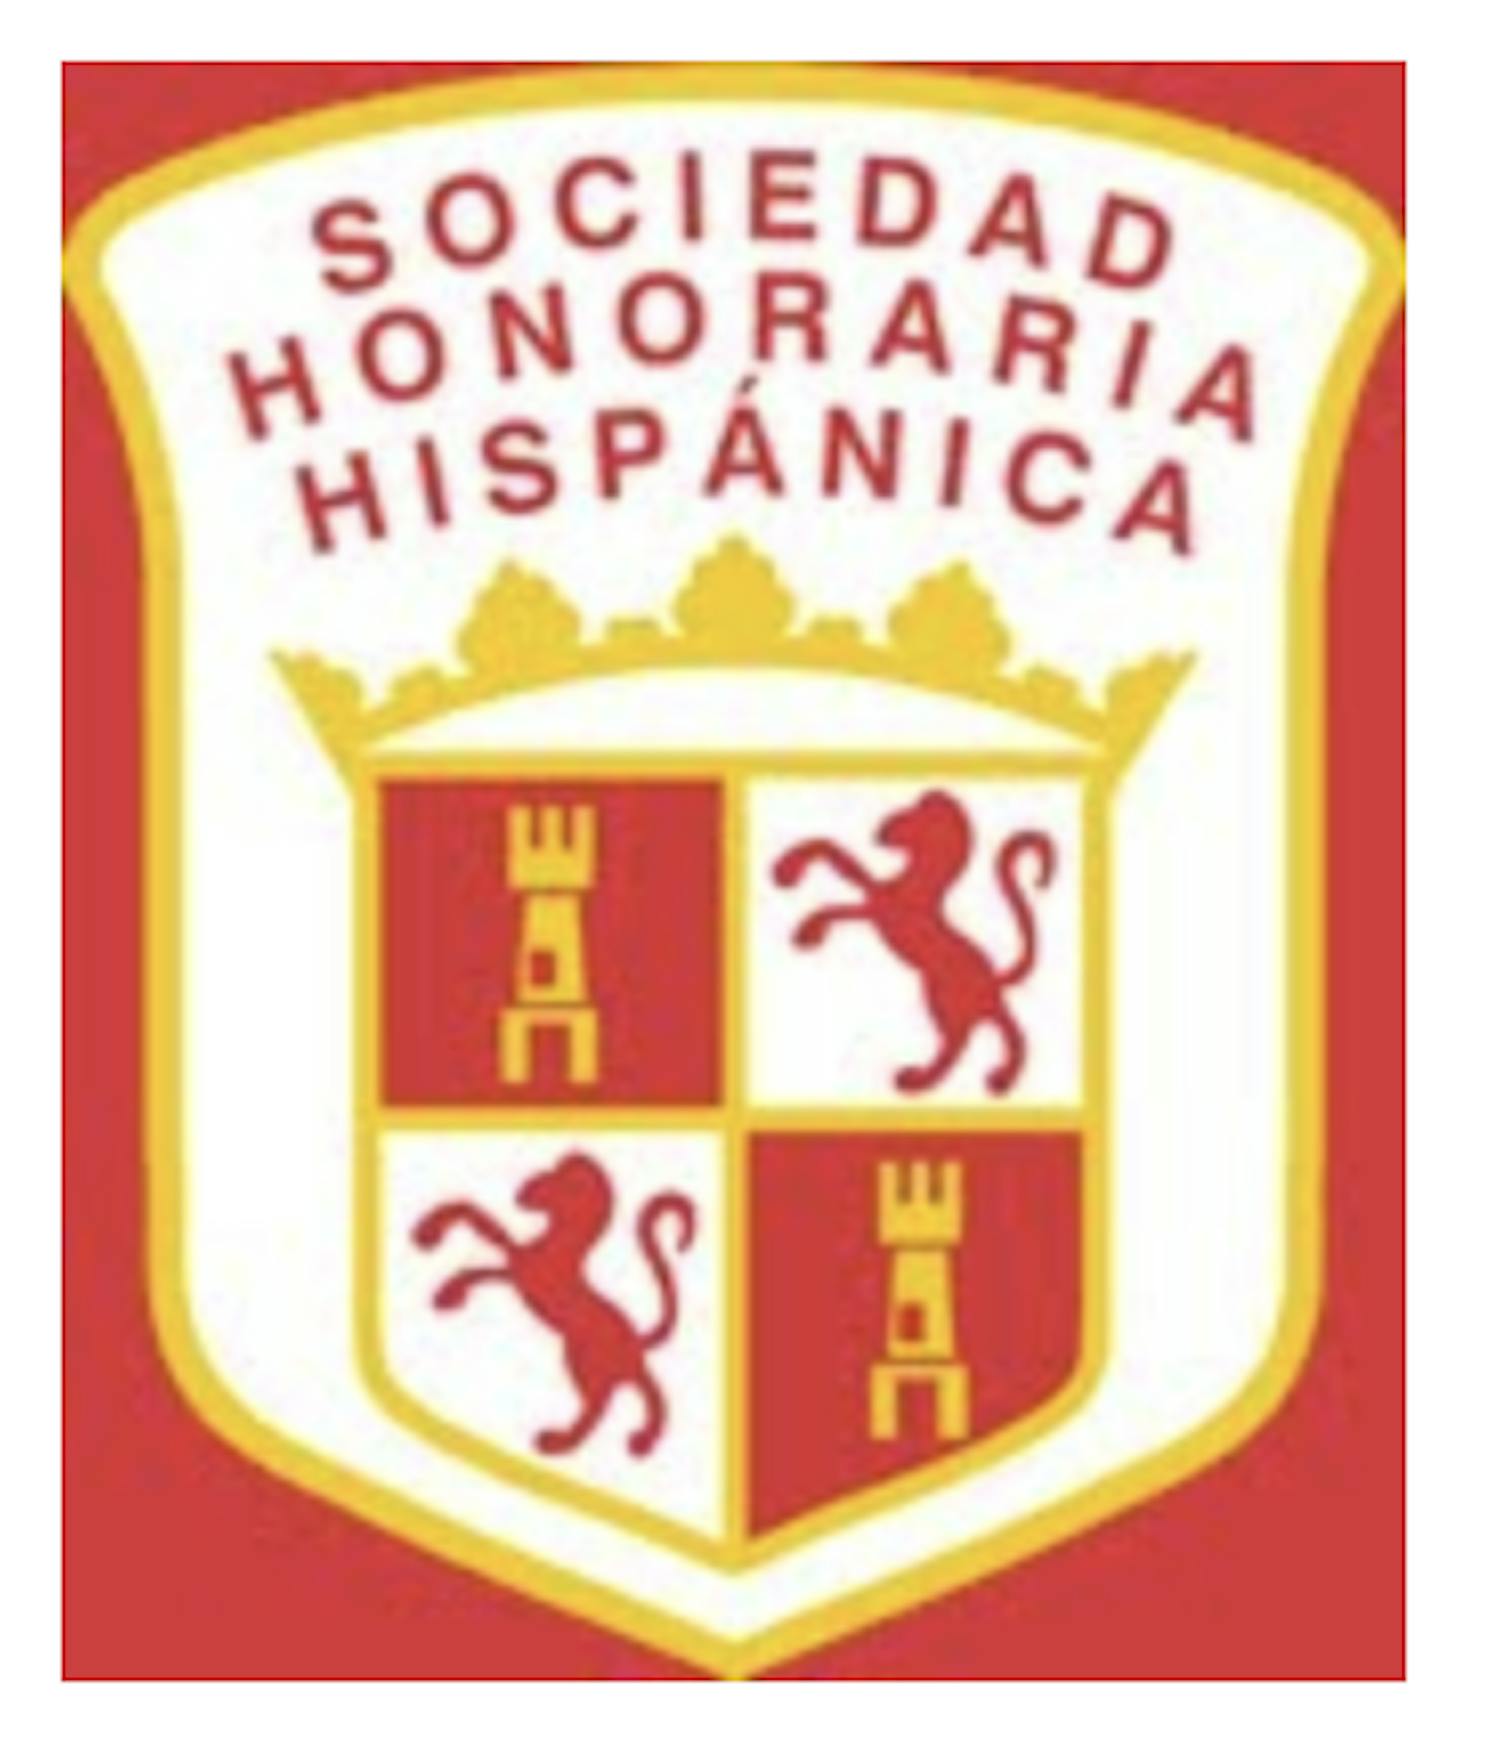 Spanish Honor Society